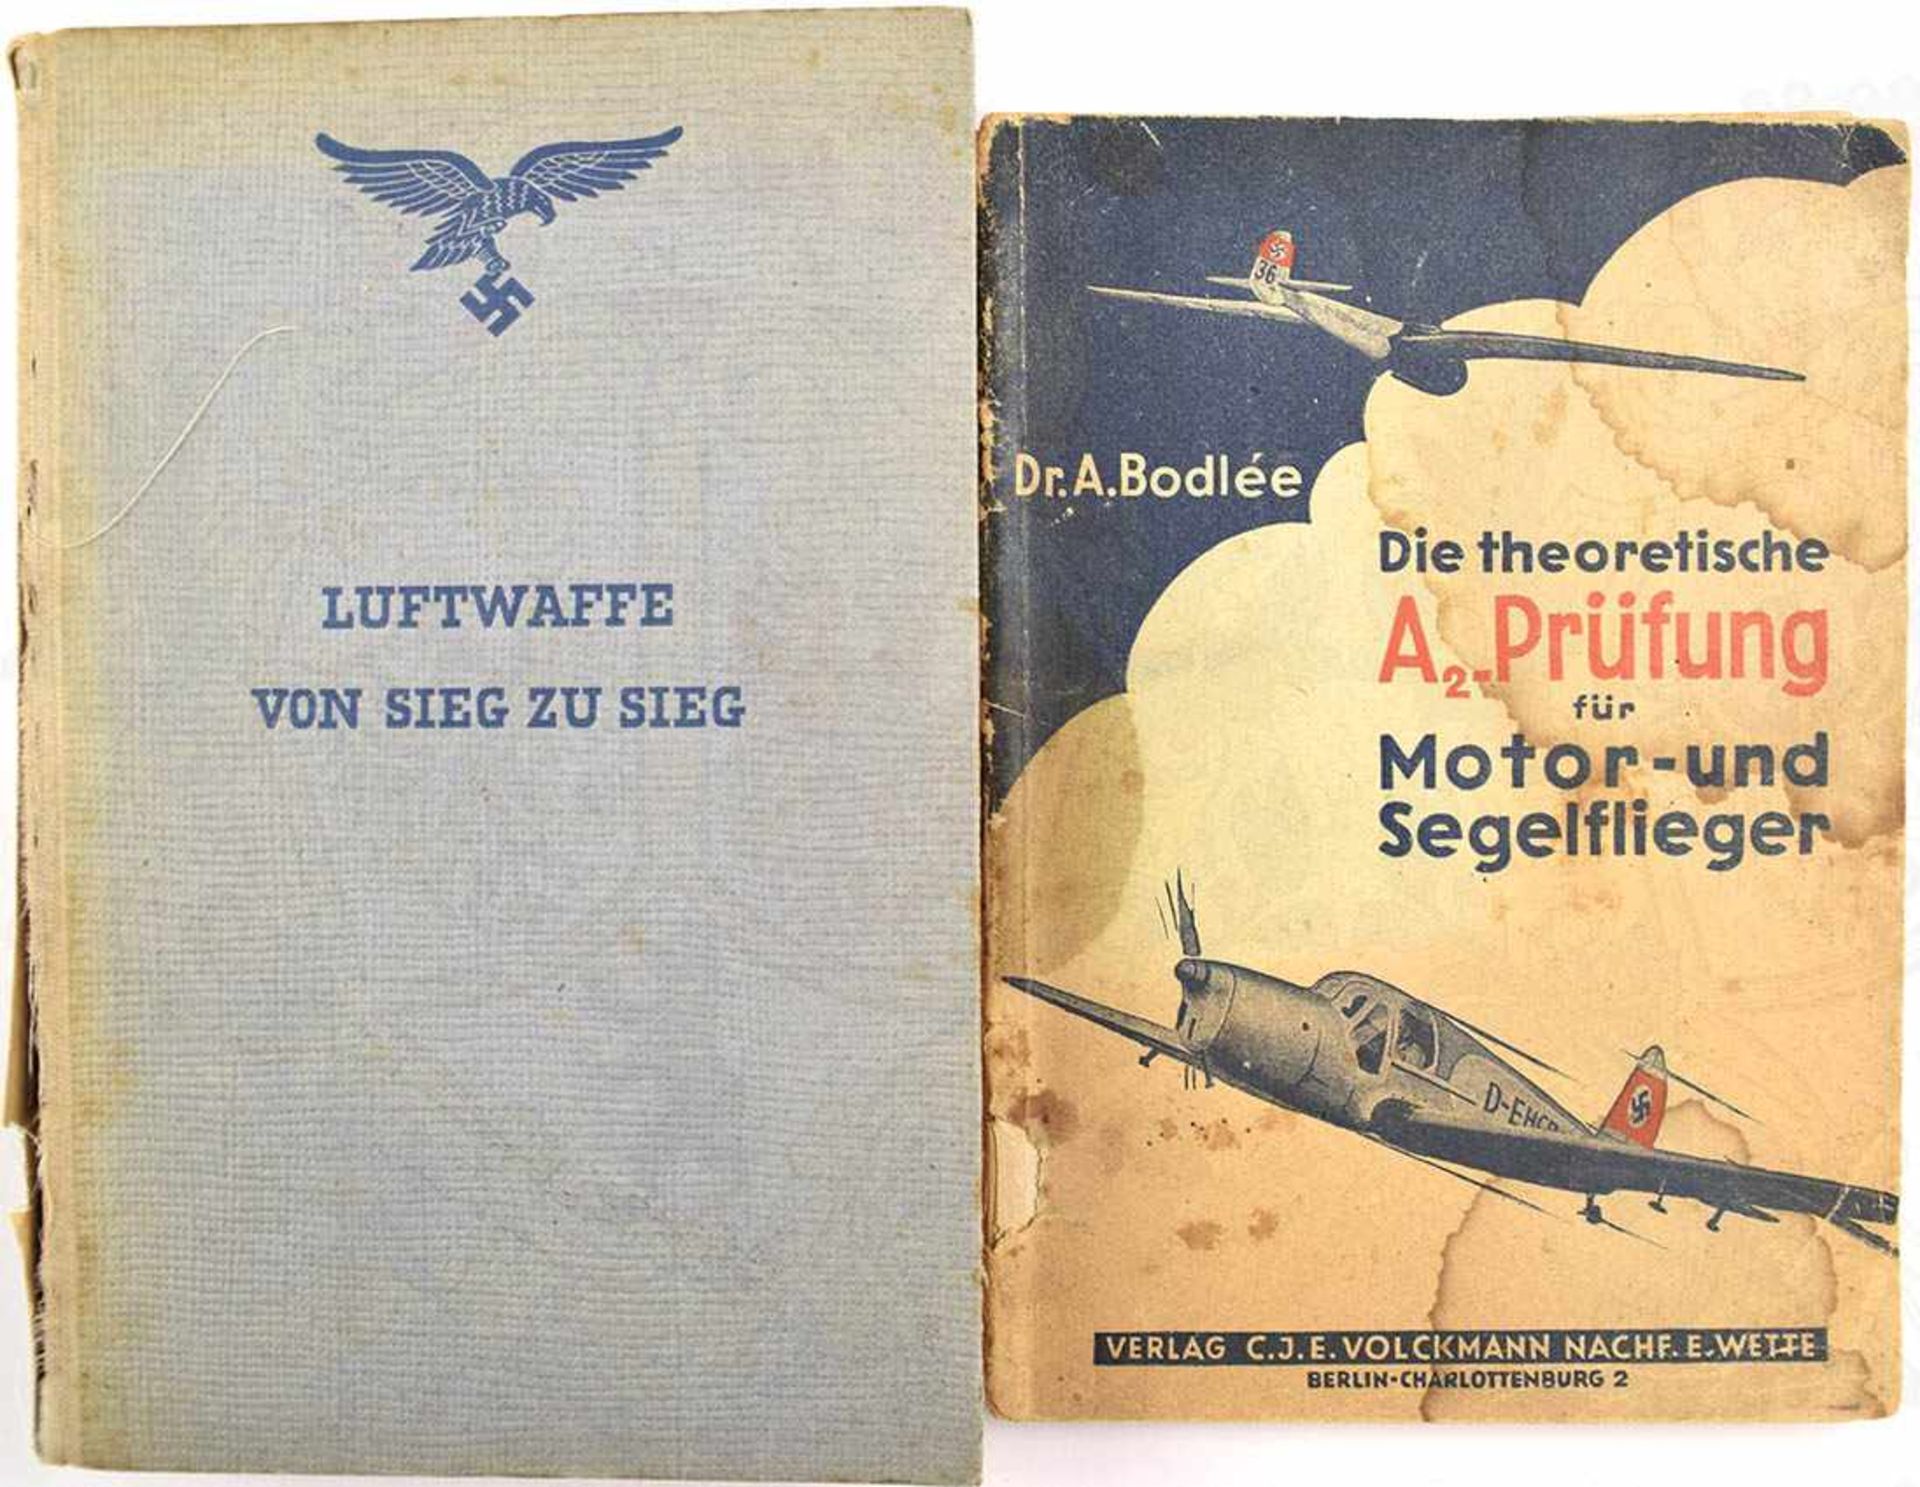 LUFTWAFFE VON SIEG ZU SIEG - VON NORWEGEN BIS KRETA, 1941, 222 S., Abb.; dazu „Die theoretische A2-